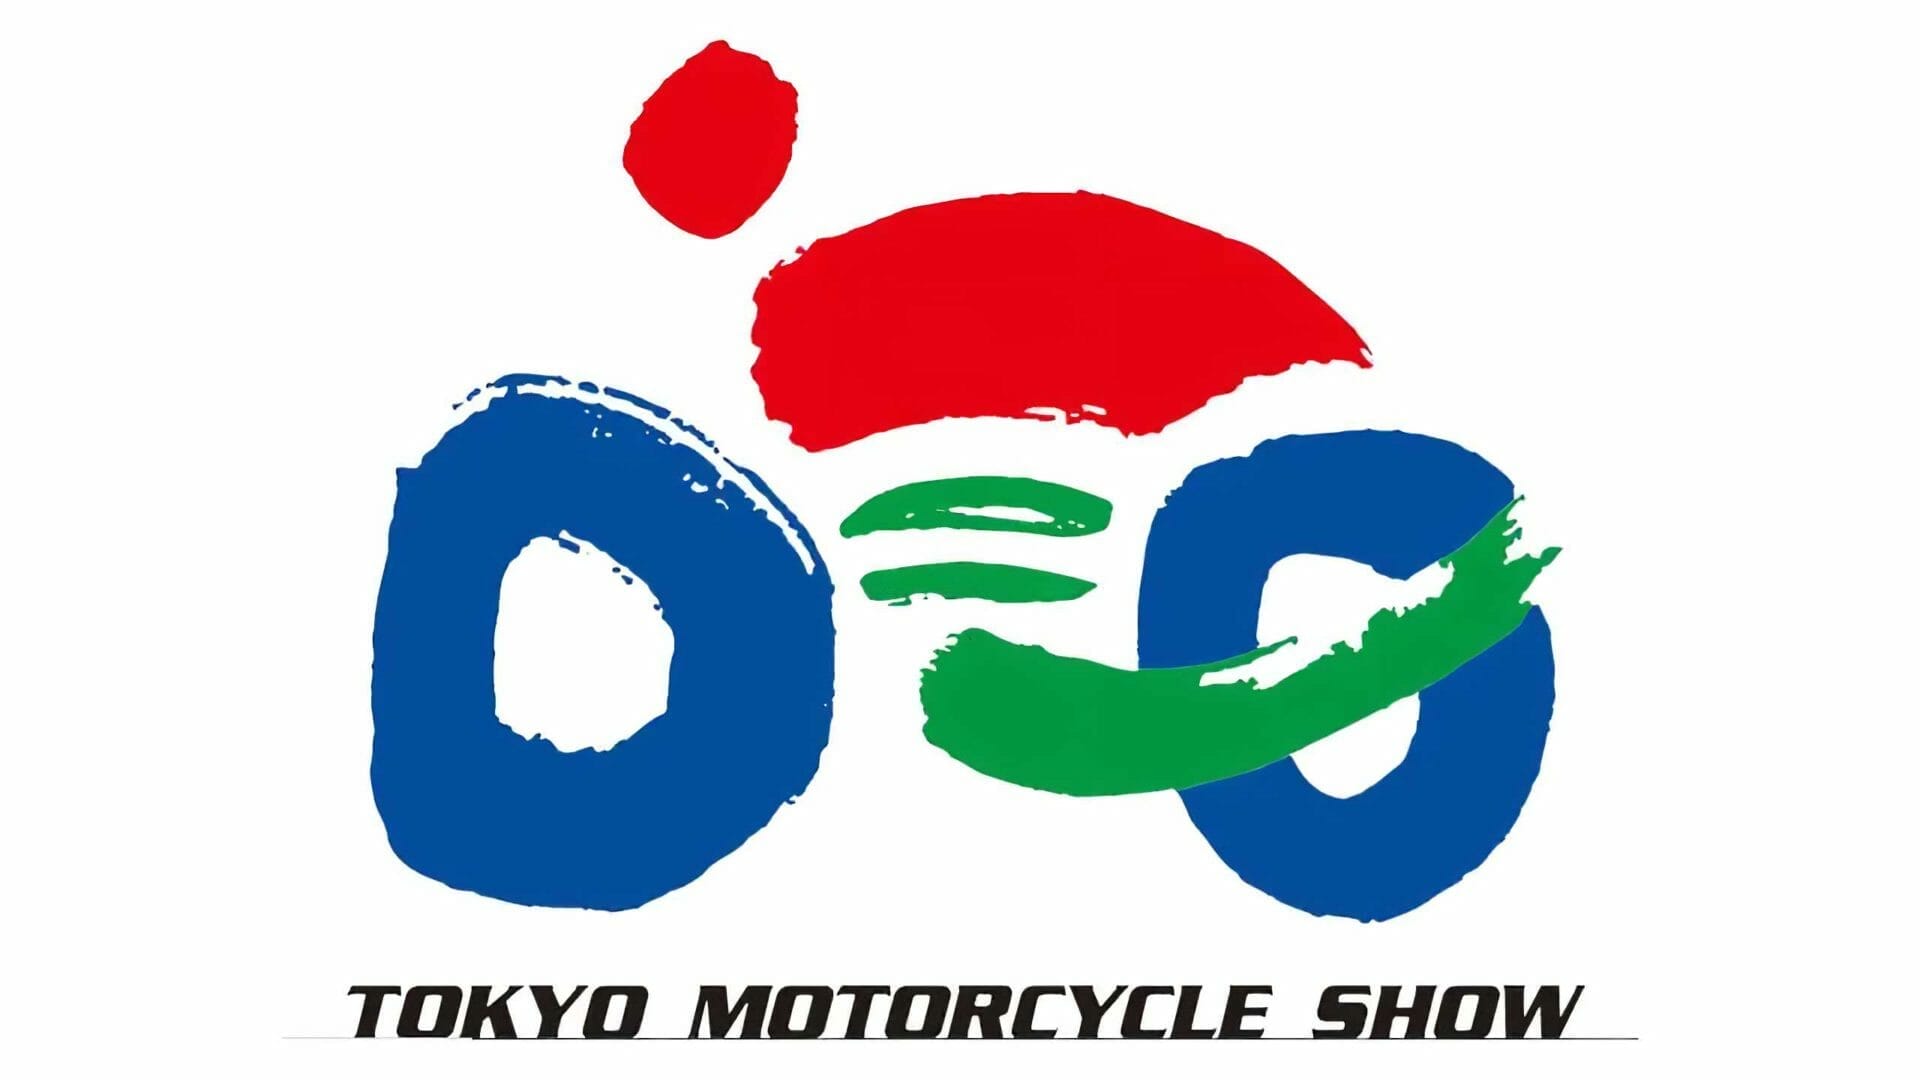 Tokyo Motorcycle Show soll wieder stattfinden
- auch in der MOTORRAD NACHRICHTEN APP